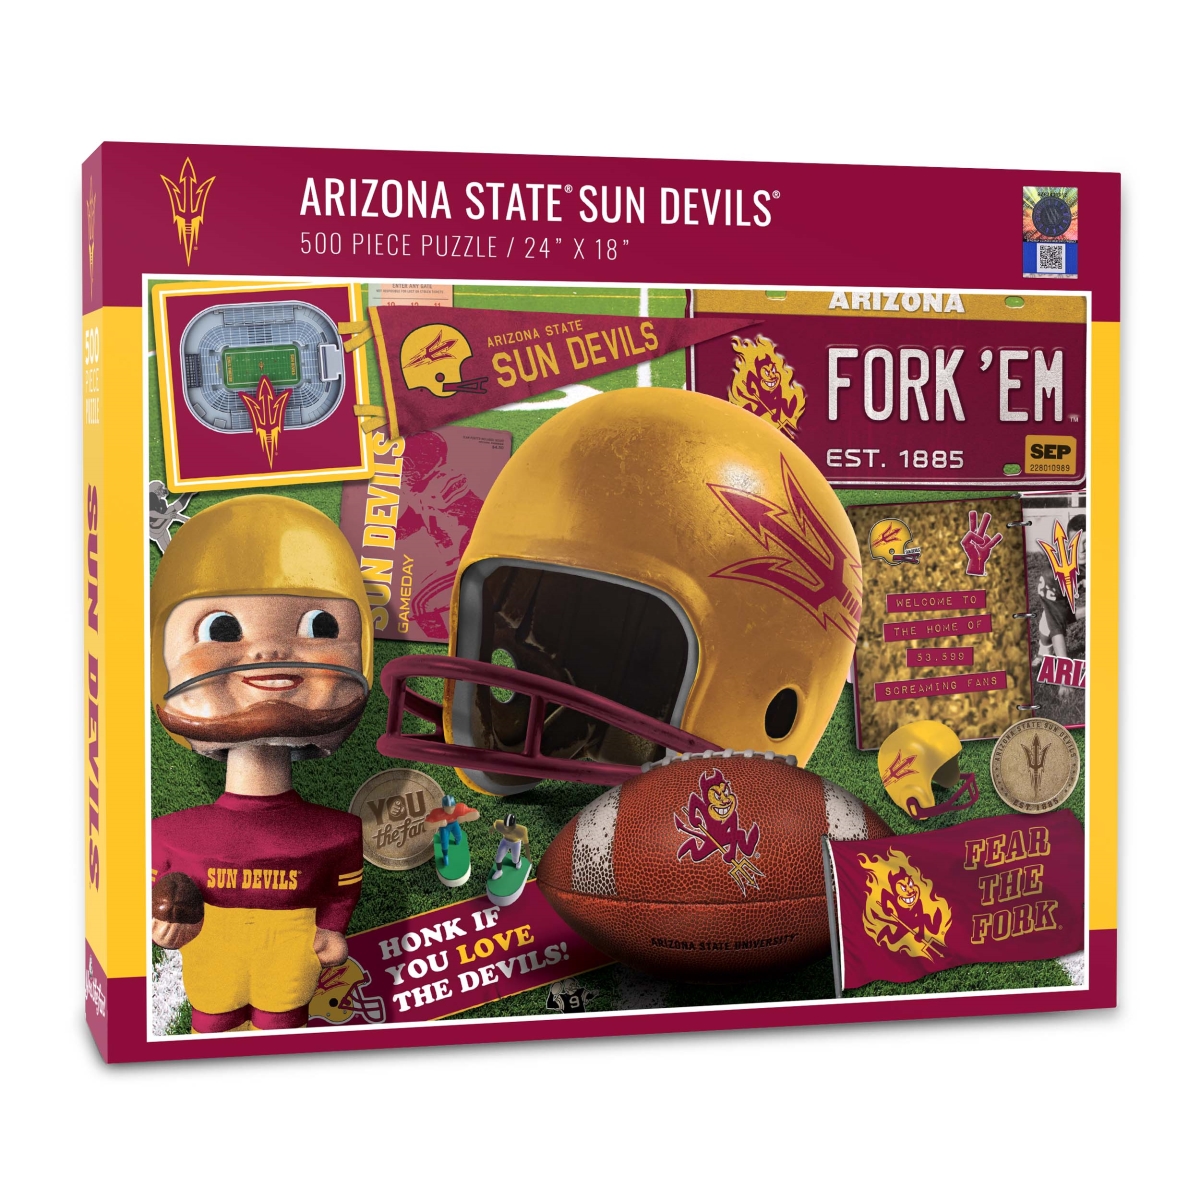 Souvenirs 18 x 24 in. NCAA Arizona State Sun Devils Retro Series Puzzle - 500 Piece